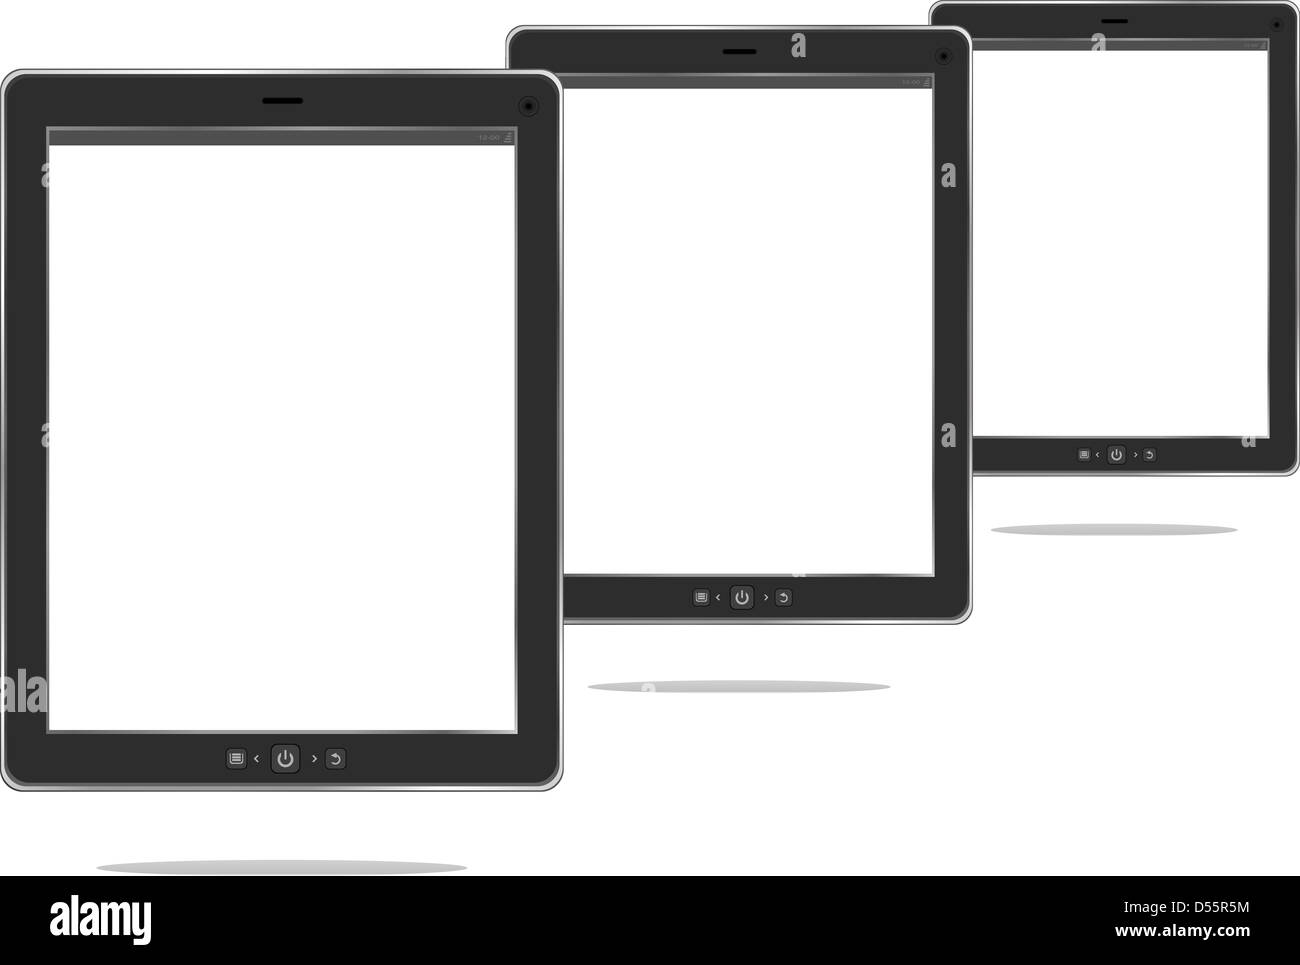 Tablet PC. Marco negro ipad tablet pc con pantalla. aislado sobre fondo blanco. Foto de stock